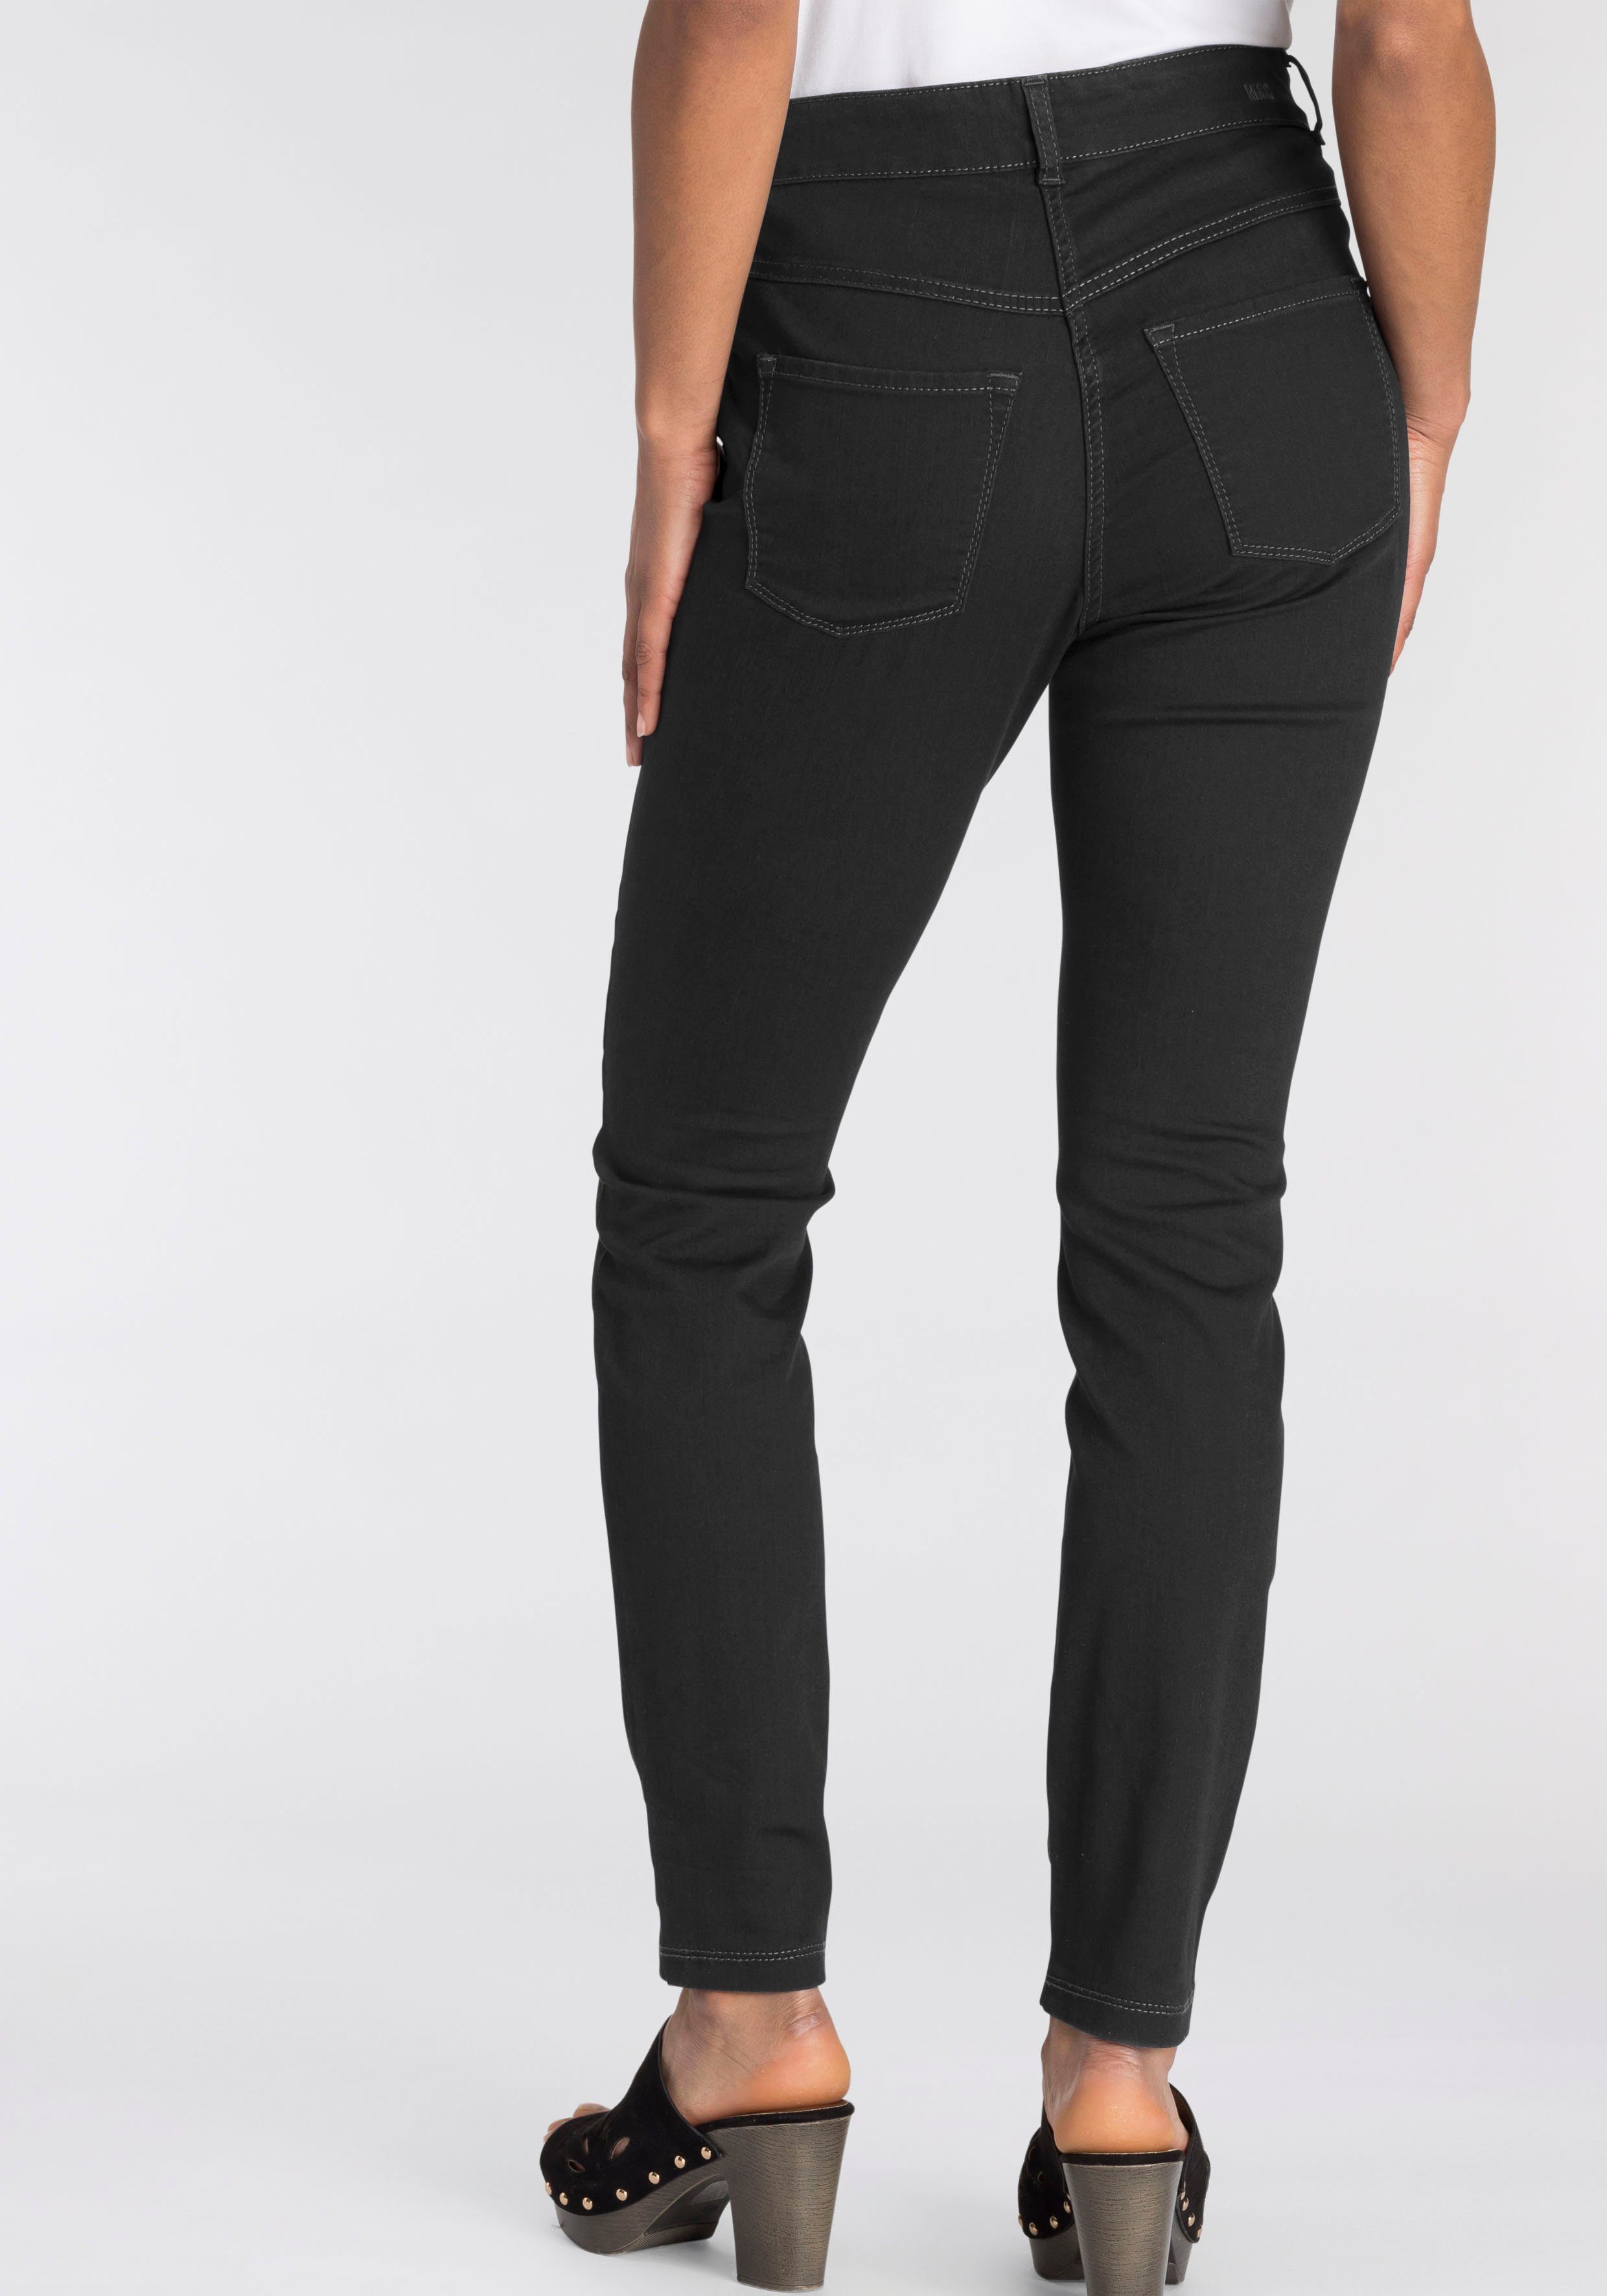 Extrem günstige Rabattpreise MAC Skinny-fit-Jeans Hiperstretch-Skinny Power-Stretch ganzen sitzt black-black bequem den Tag Qualität